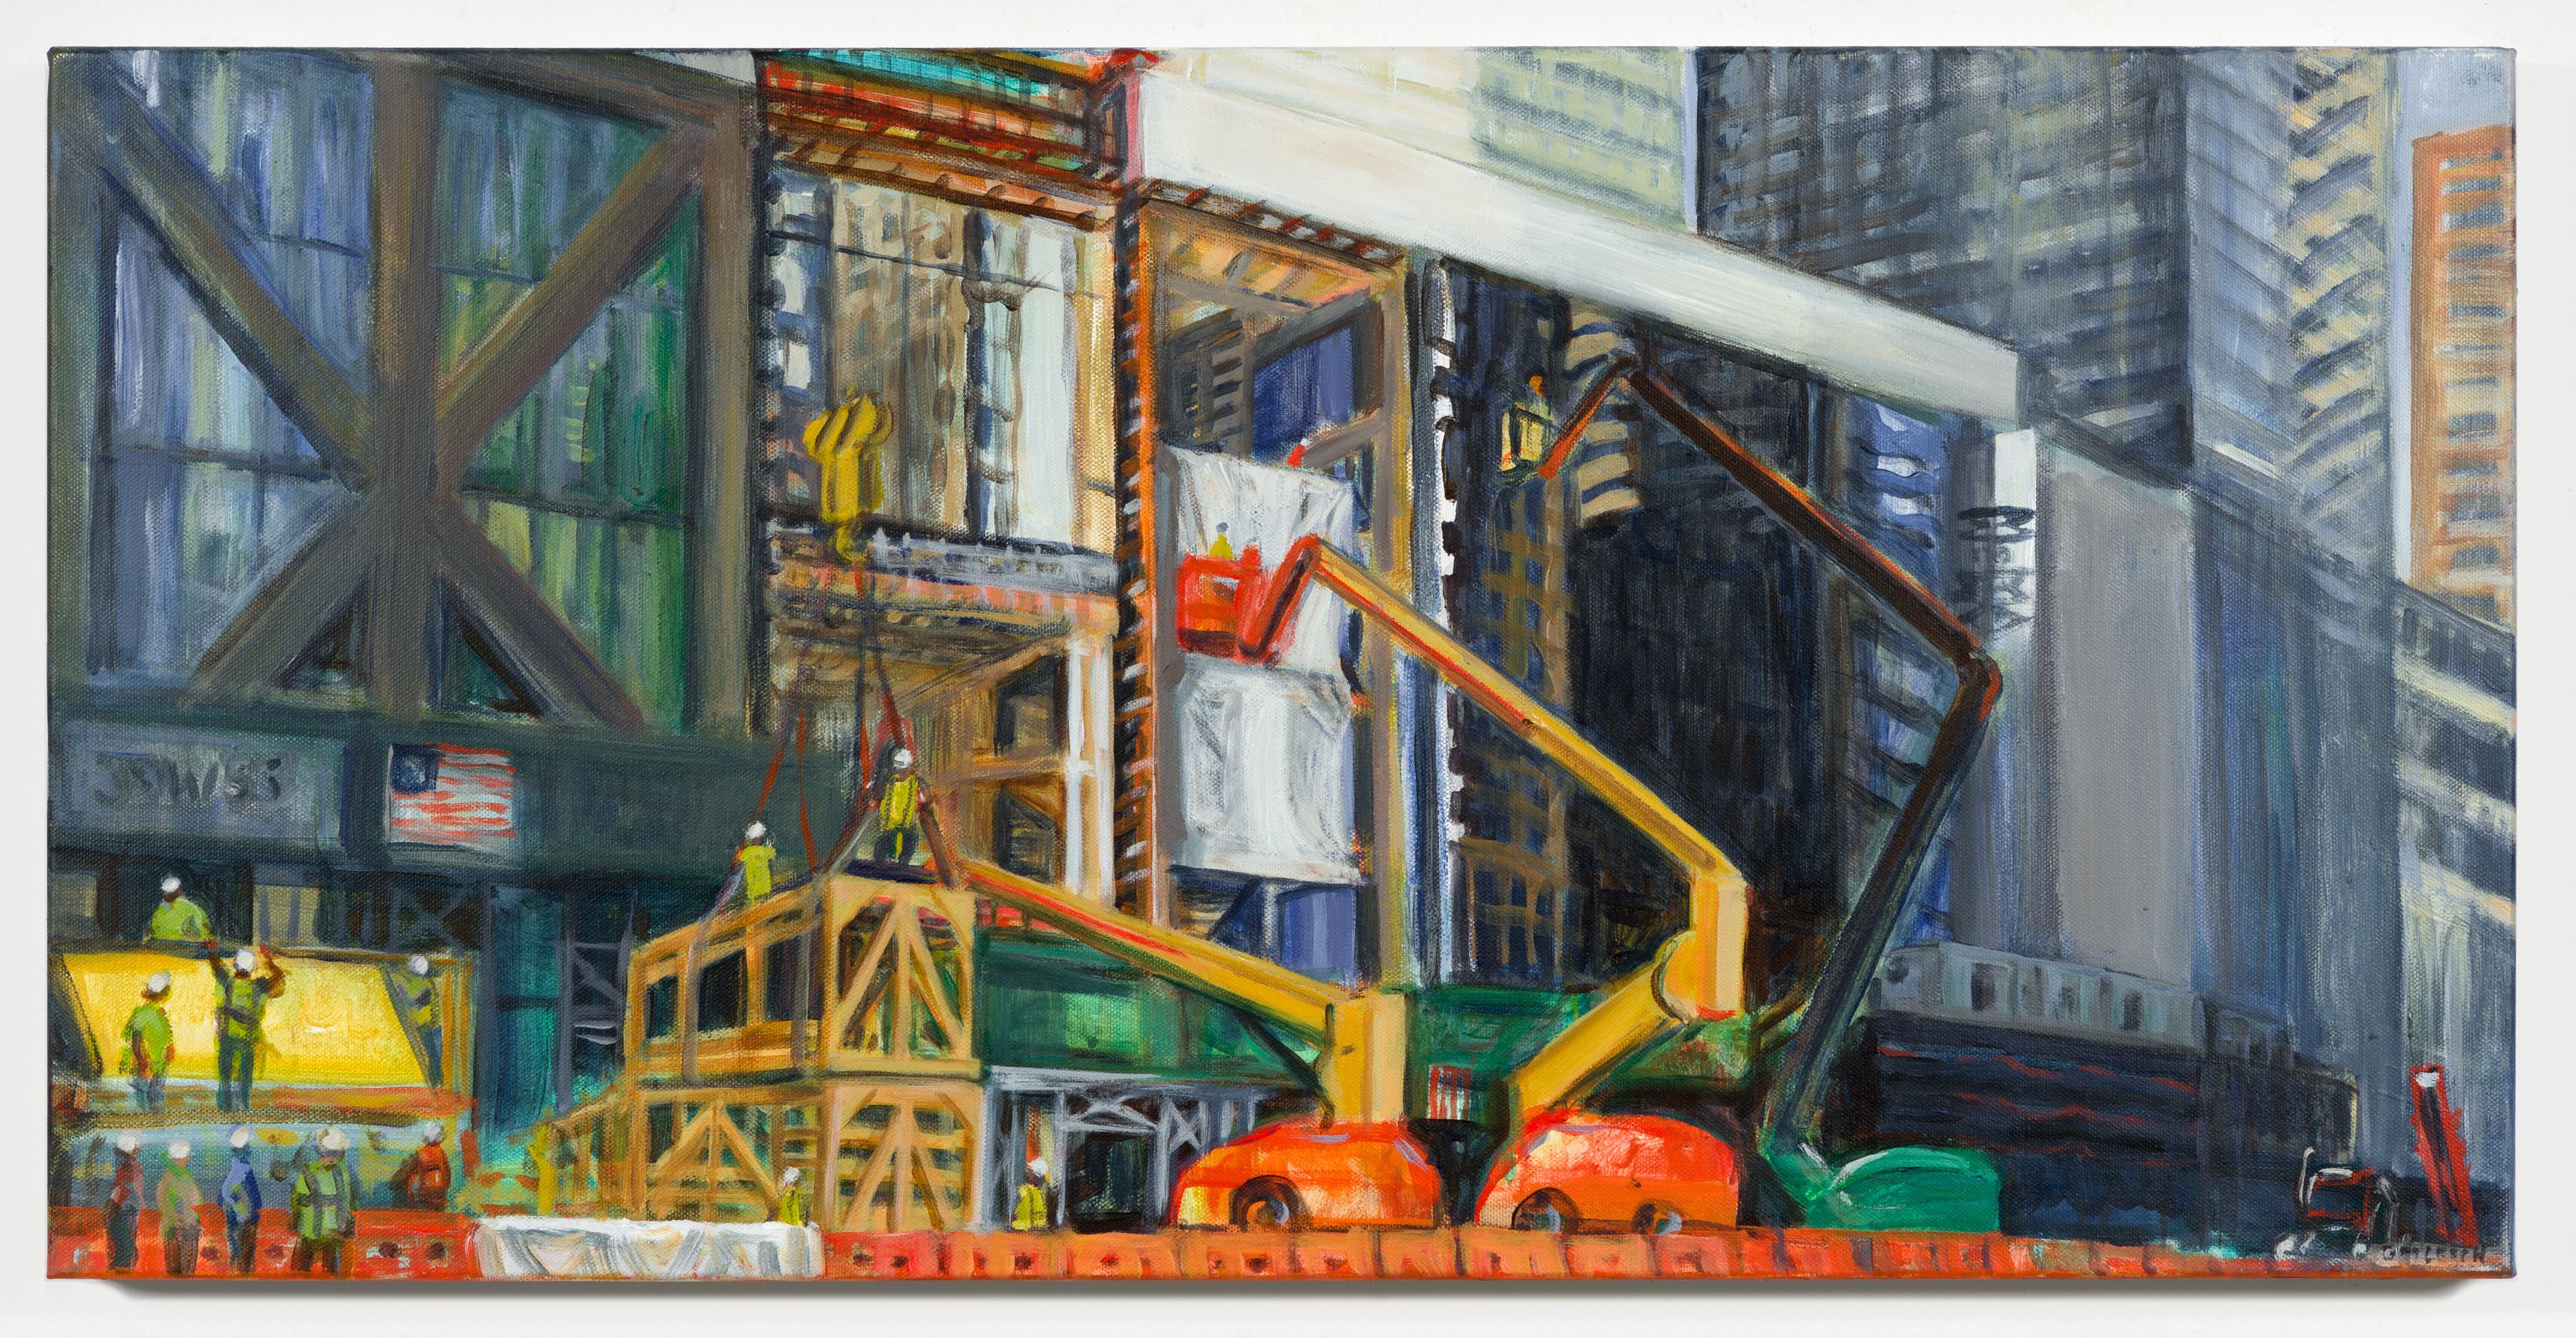 53W53 et Extension du MoMA, après-midi de juin, peinture de paysage urbain impressionniste